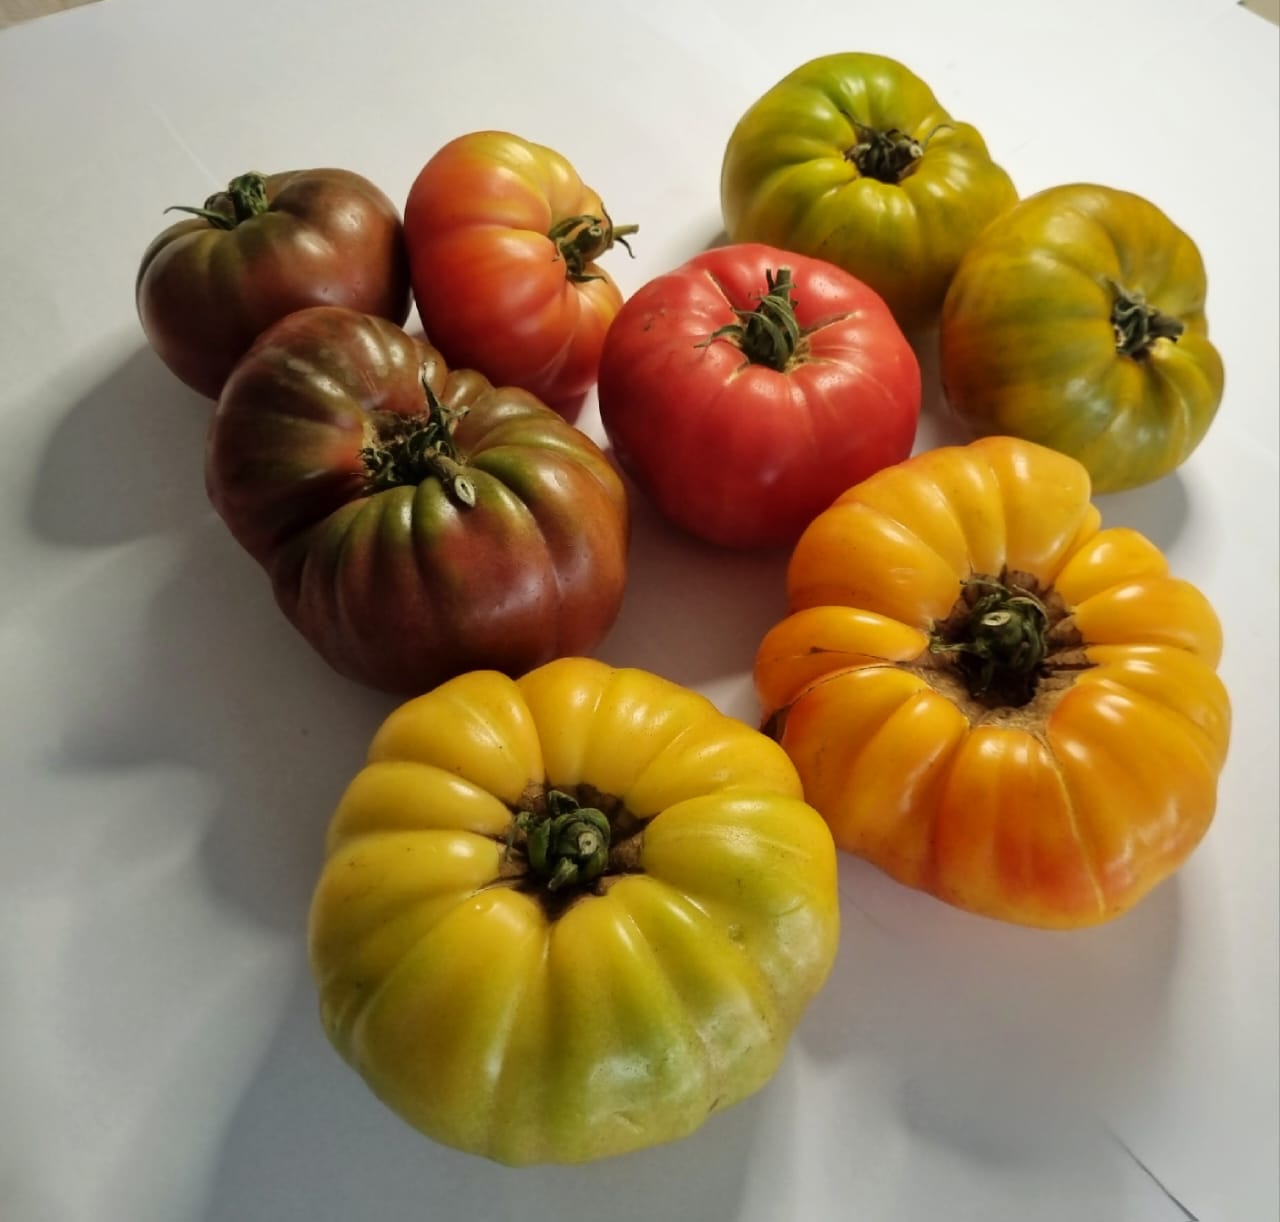 طماطم موروثة عضوية متنوعة (تقريبًا 500 جرام)